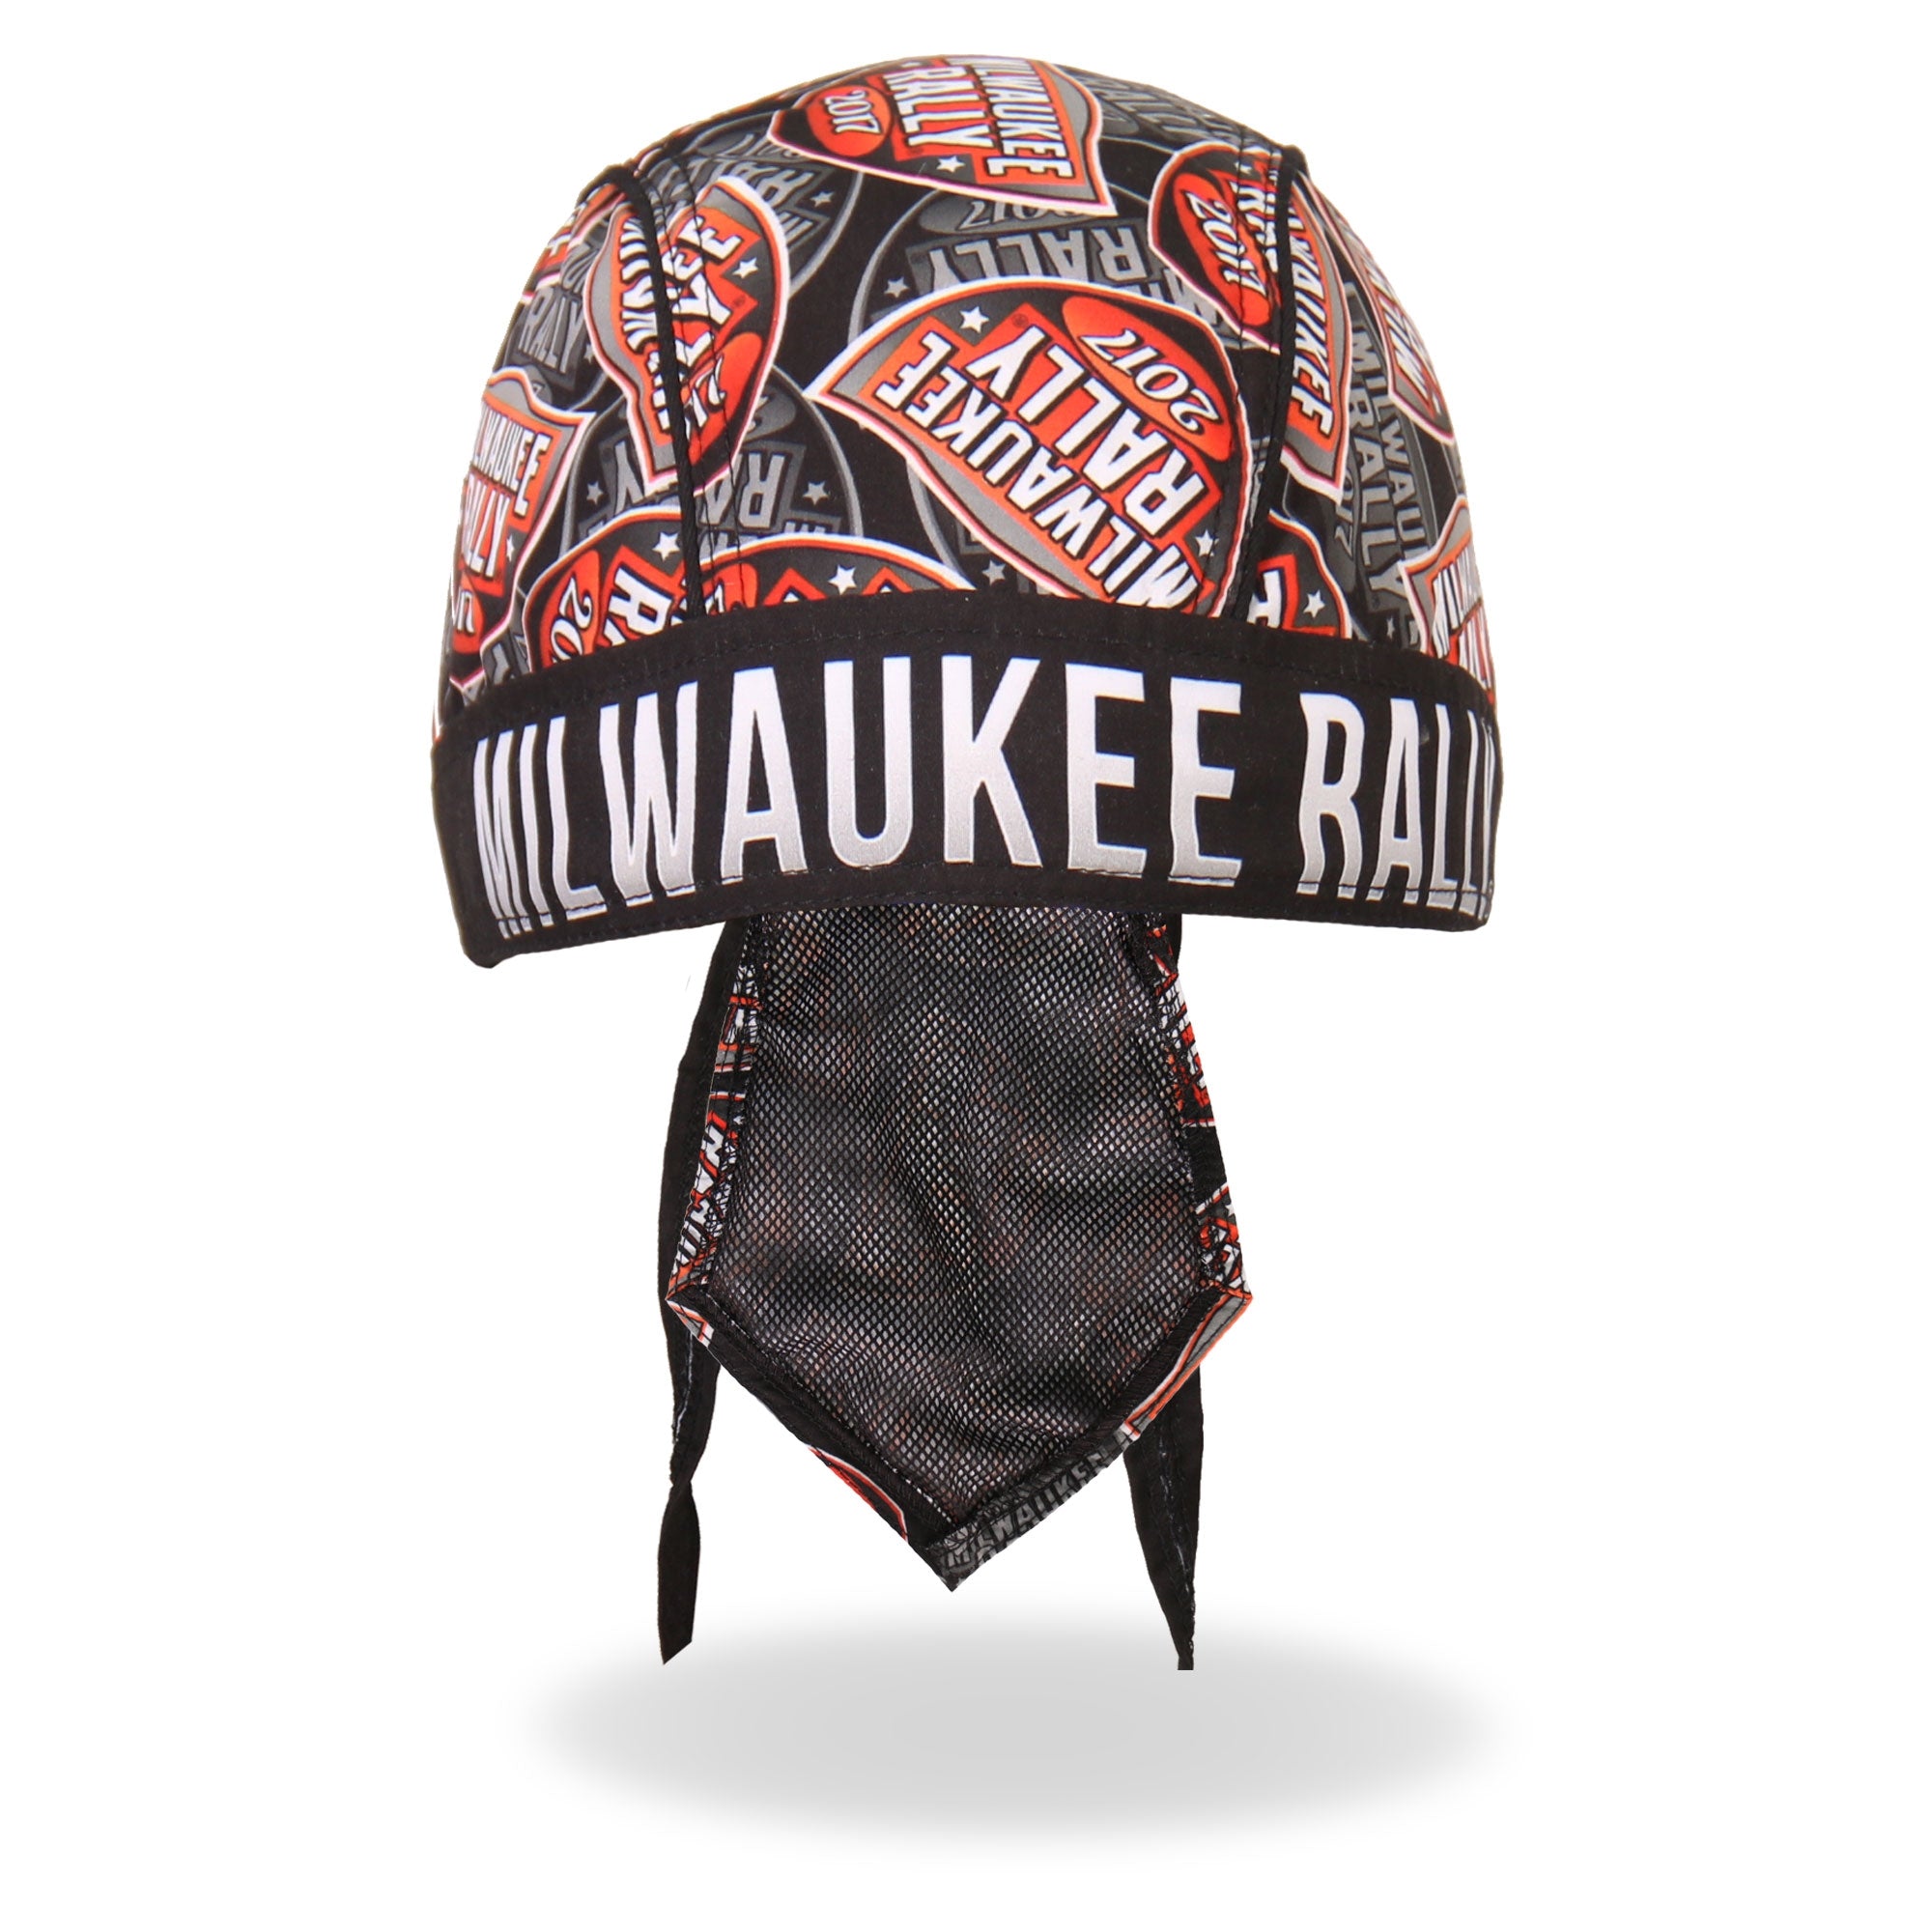 Official 2017 Milwaukee Rally Head Wrap